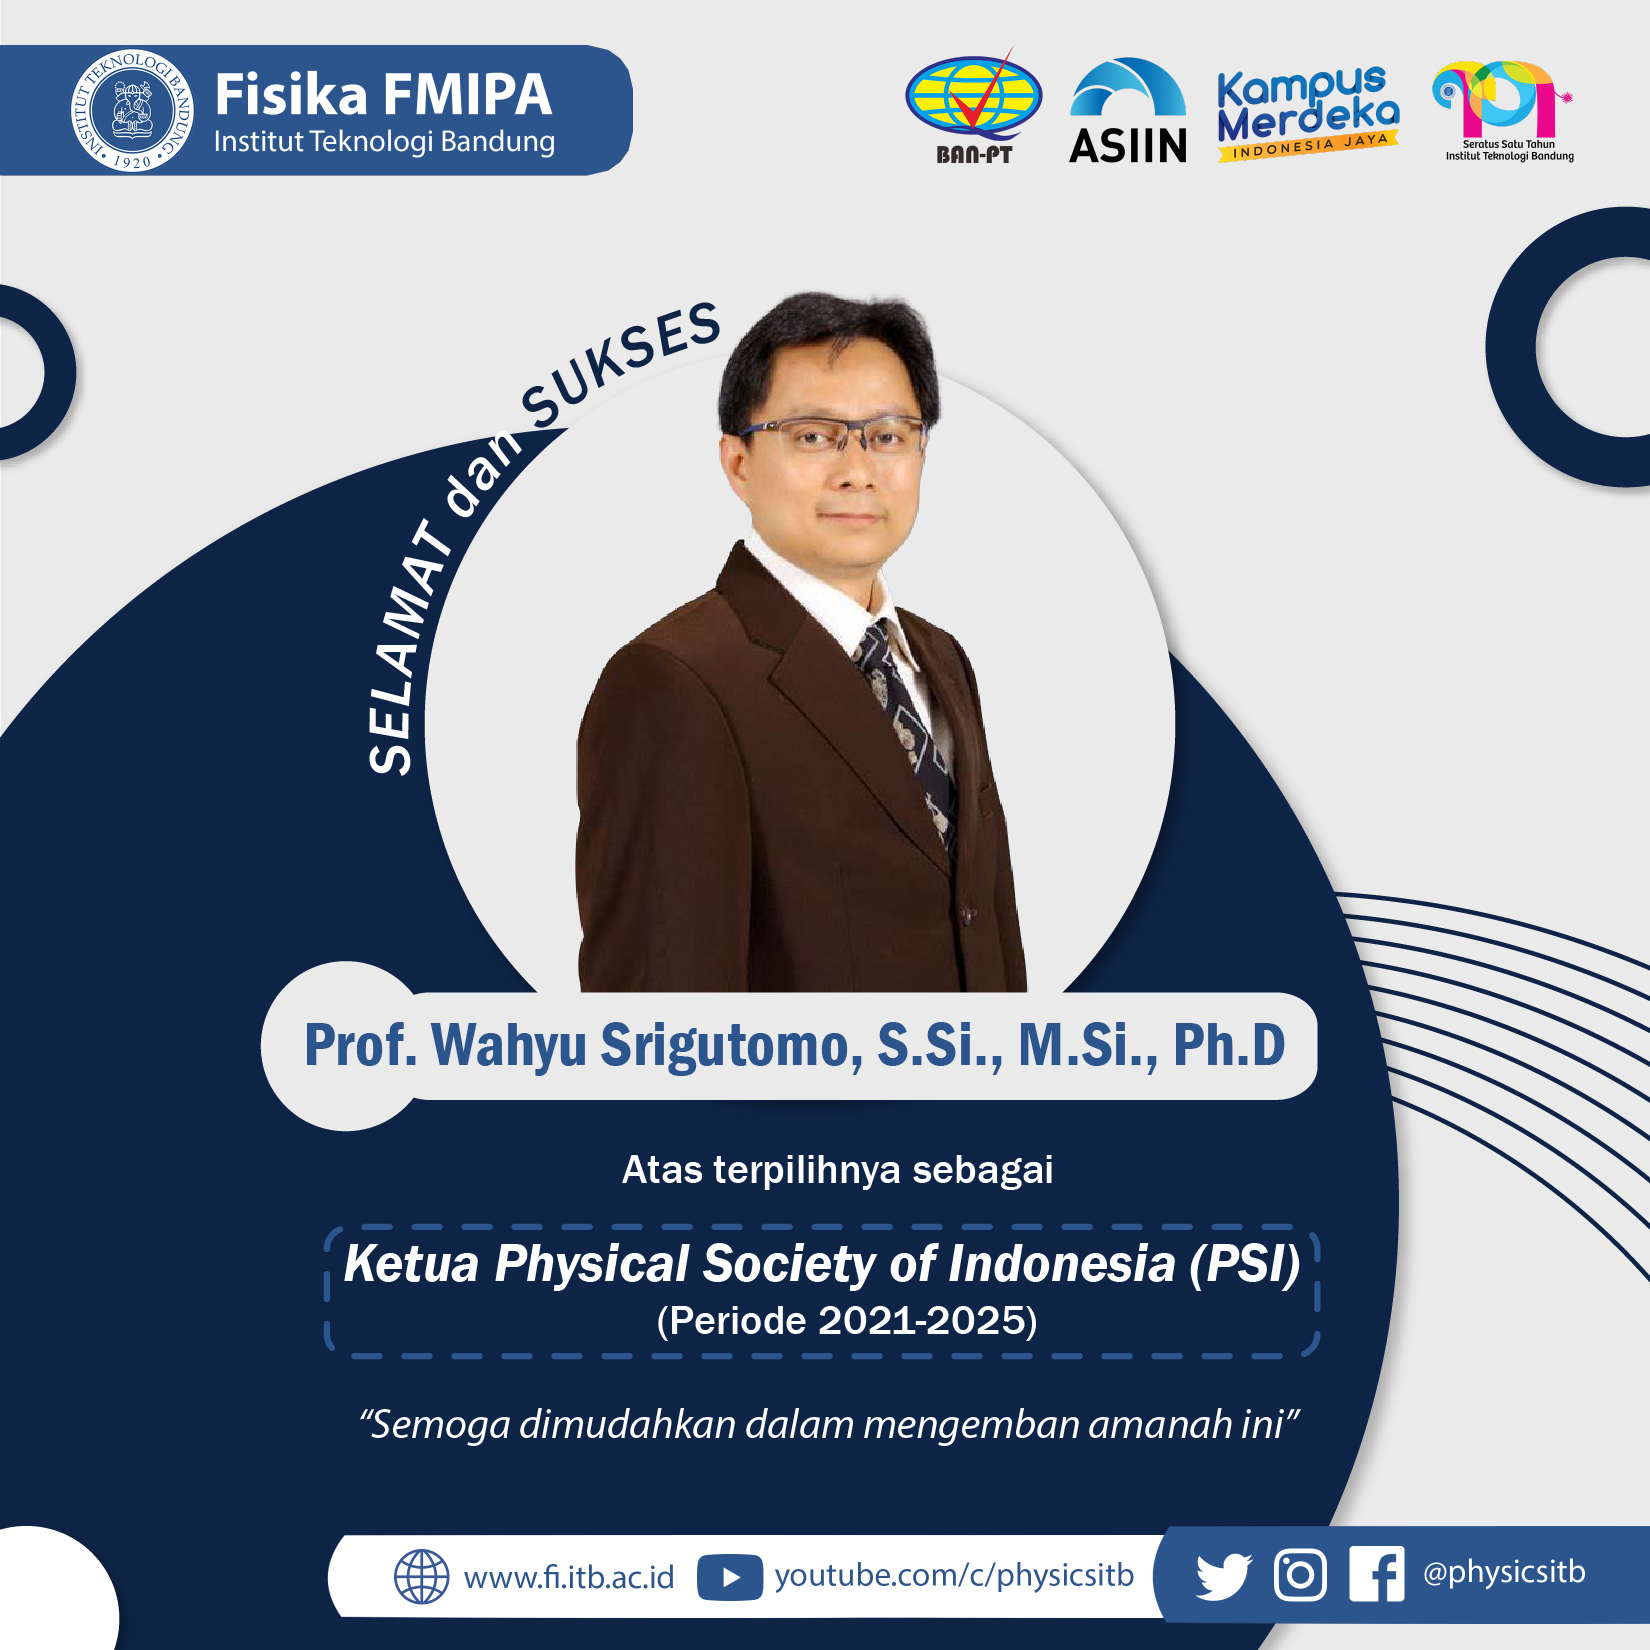 Selamat Kepada Prof. Wahyu Srigutomo, S.Si., M.Si., Ph.D. Sebagai Ketua Physical Society of Indonesia 2021-2025